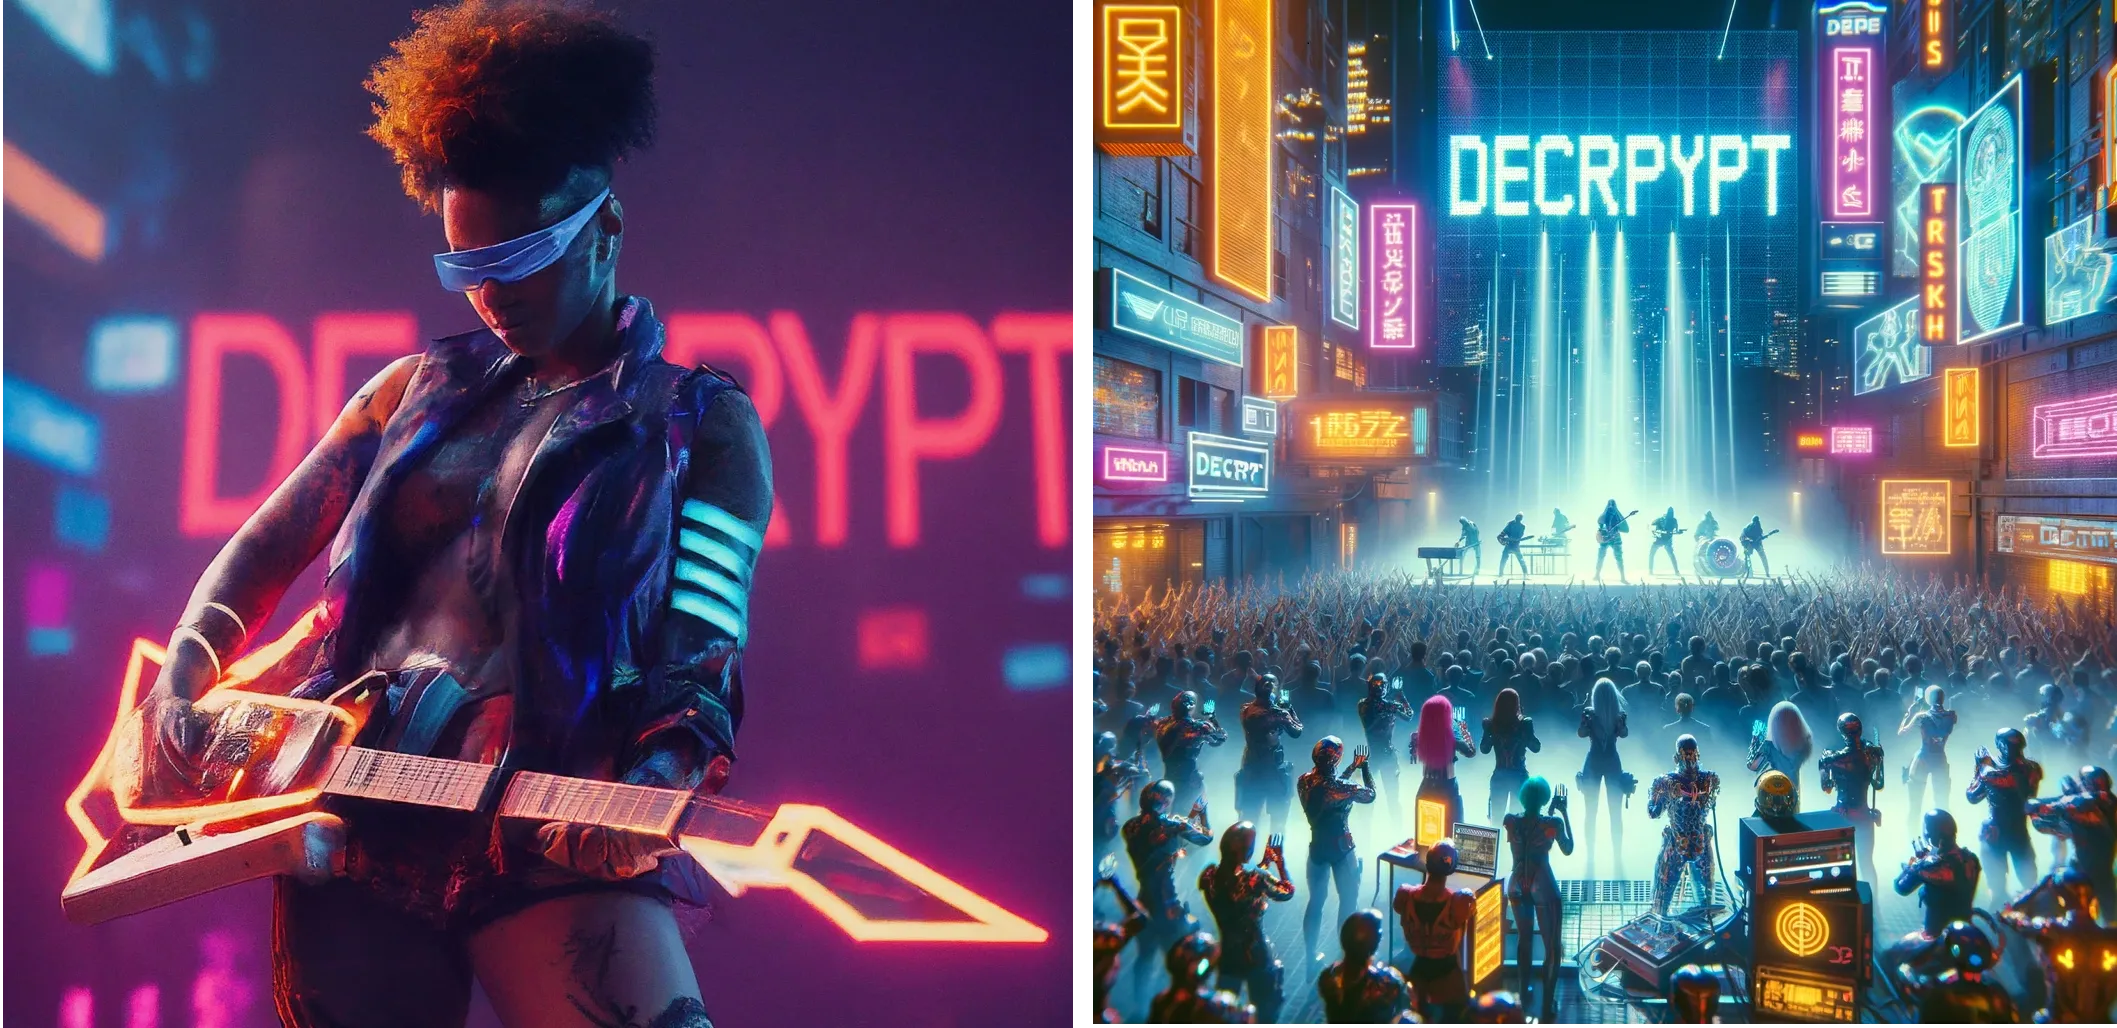 Artista futurista Cyberpunk actuando en el escenario con la palabra "DECRYPT" en luces de neón de fondo. Géminis (izquierda) vs ChatGPT Plus (derecha)